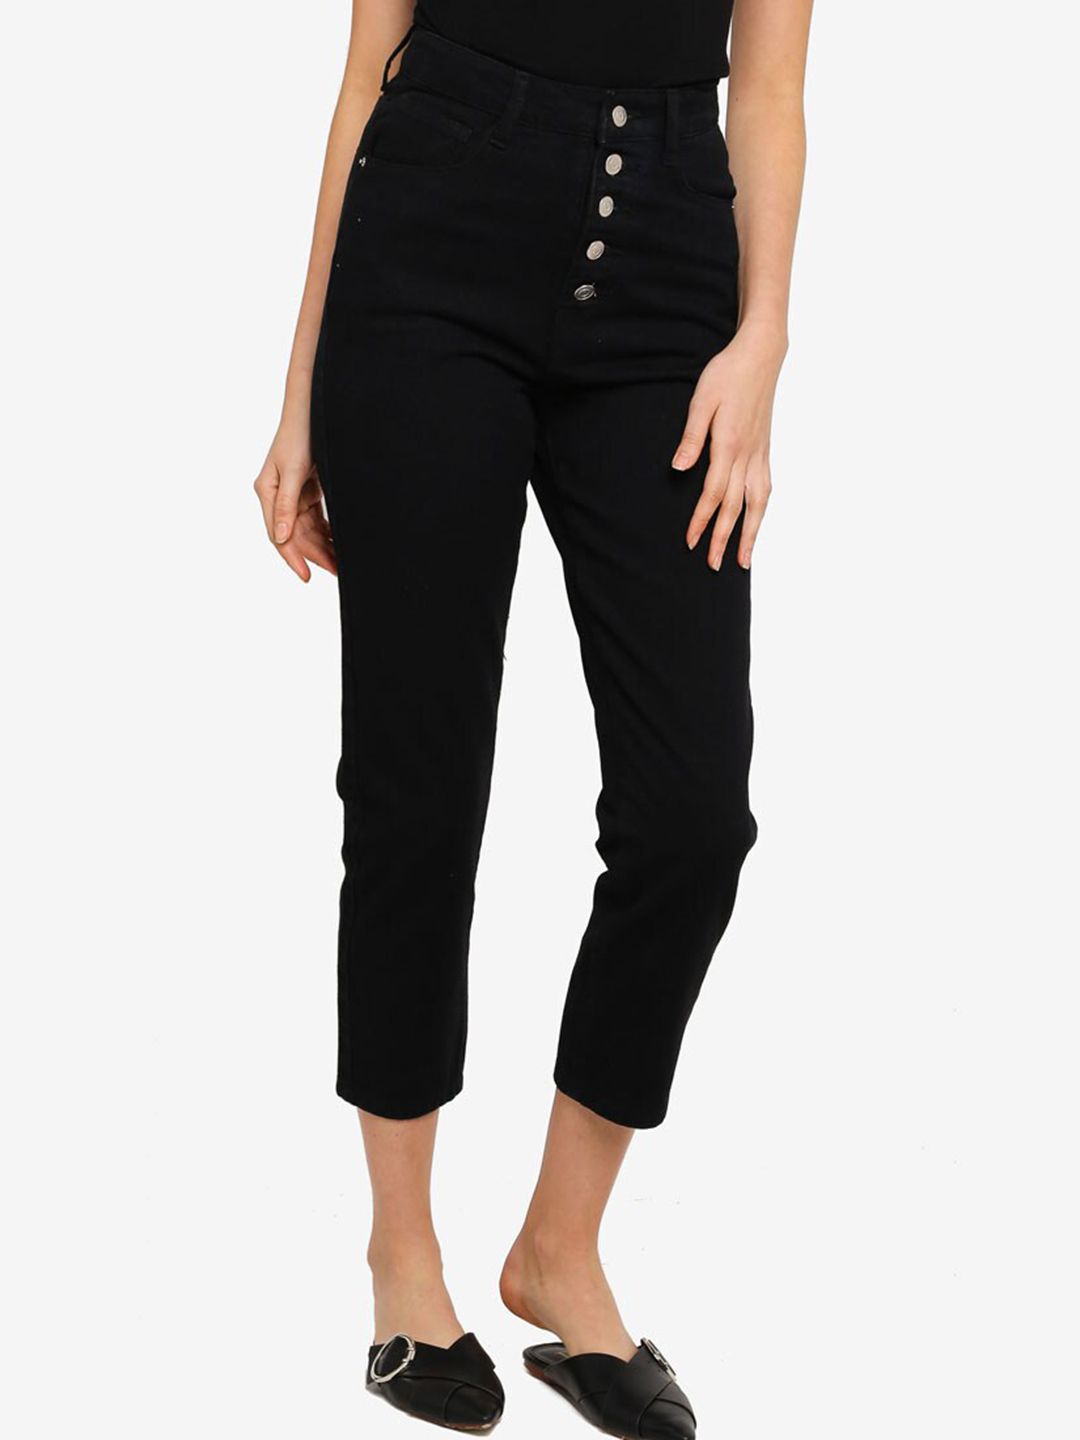 ZALORA BASICS Women Black Skinny Fit Jeans Price in India